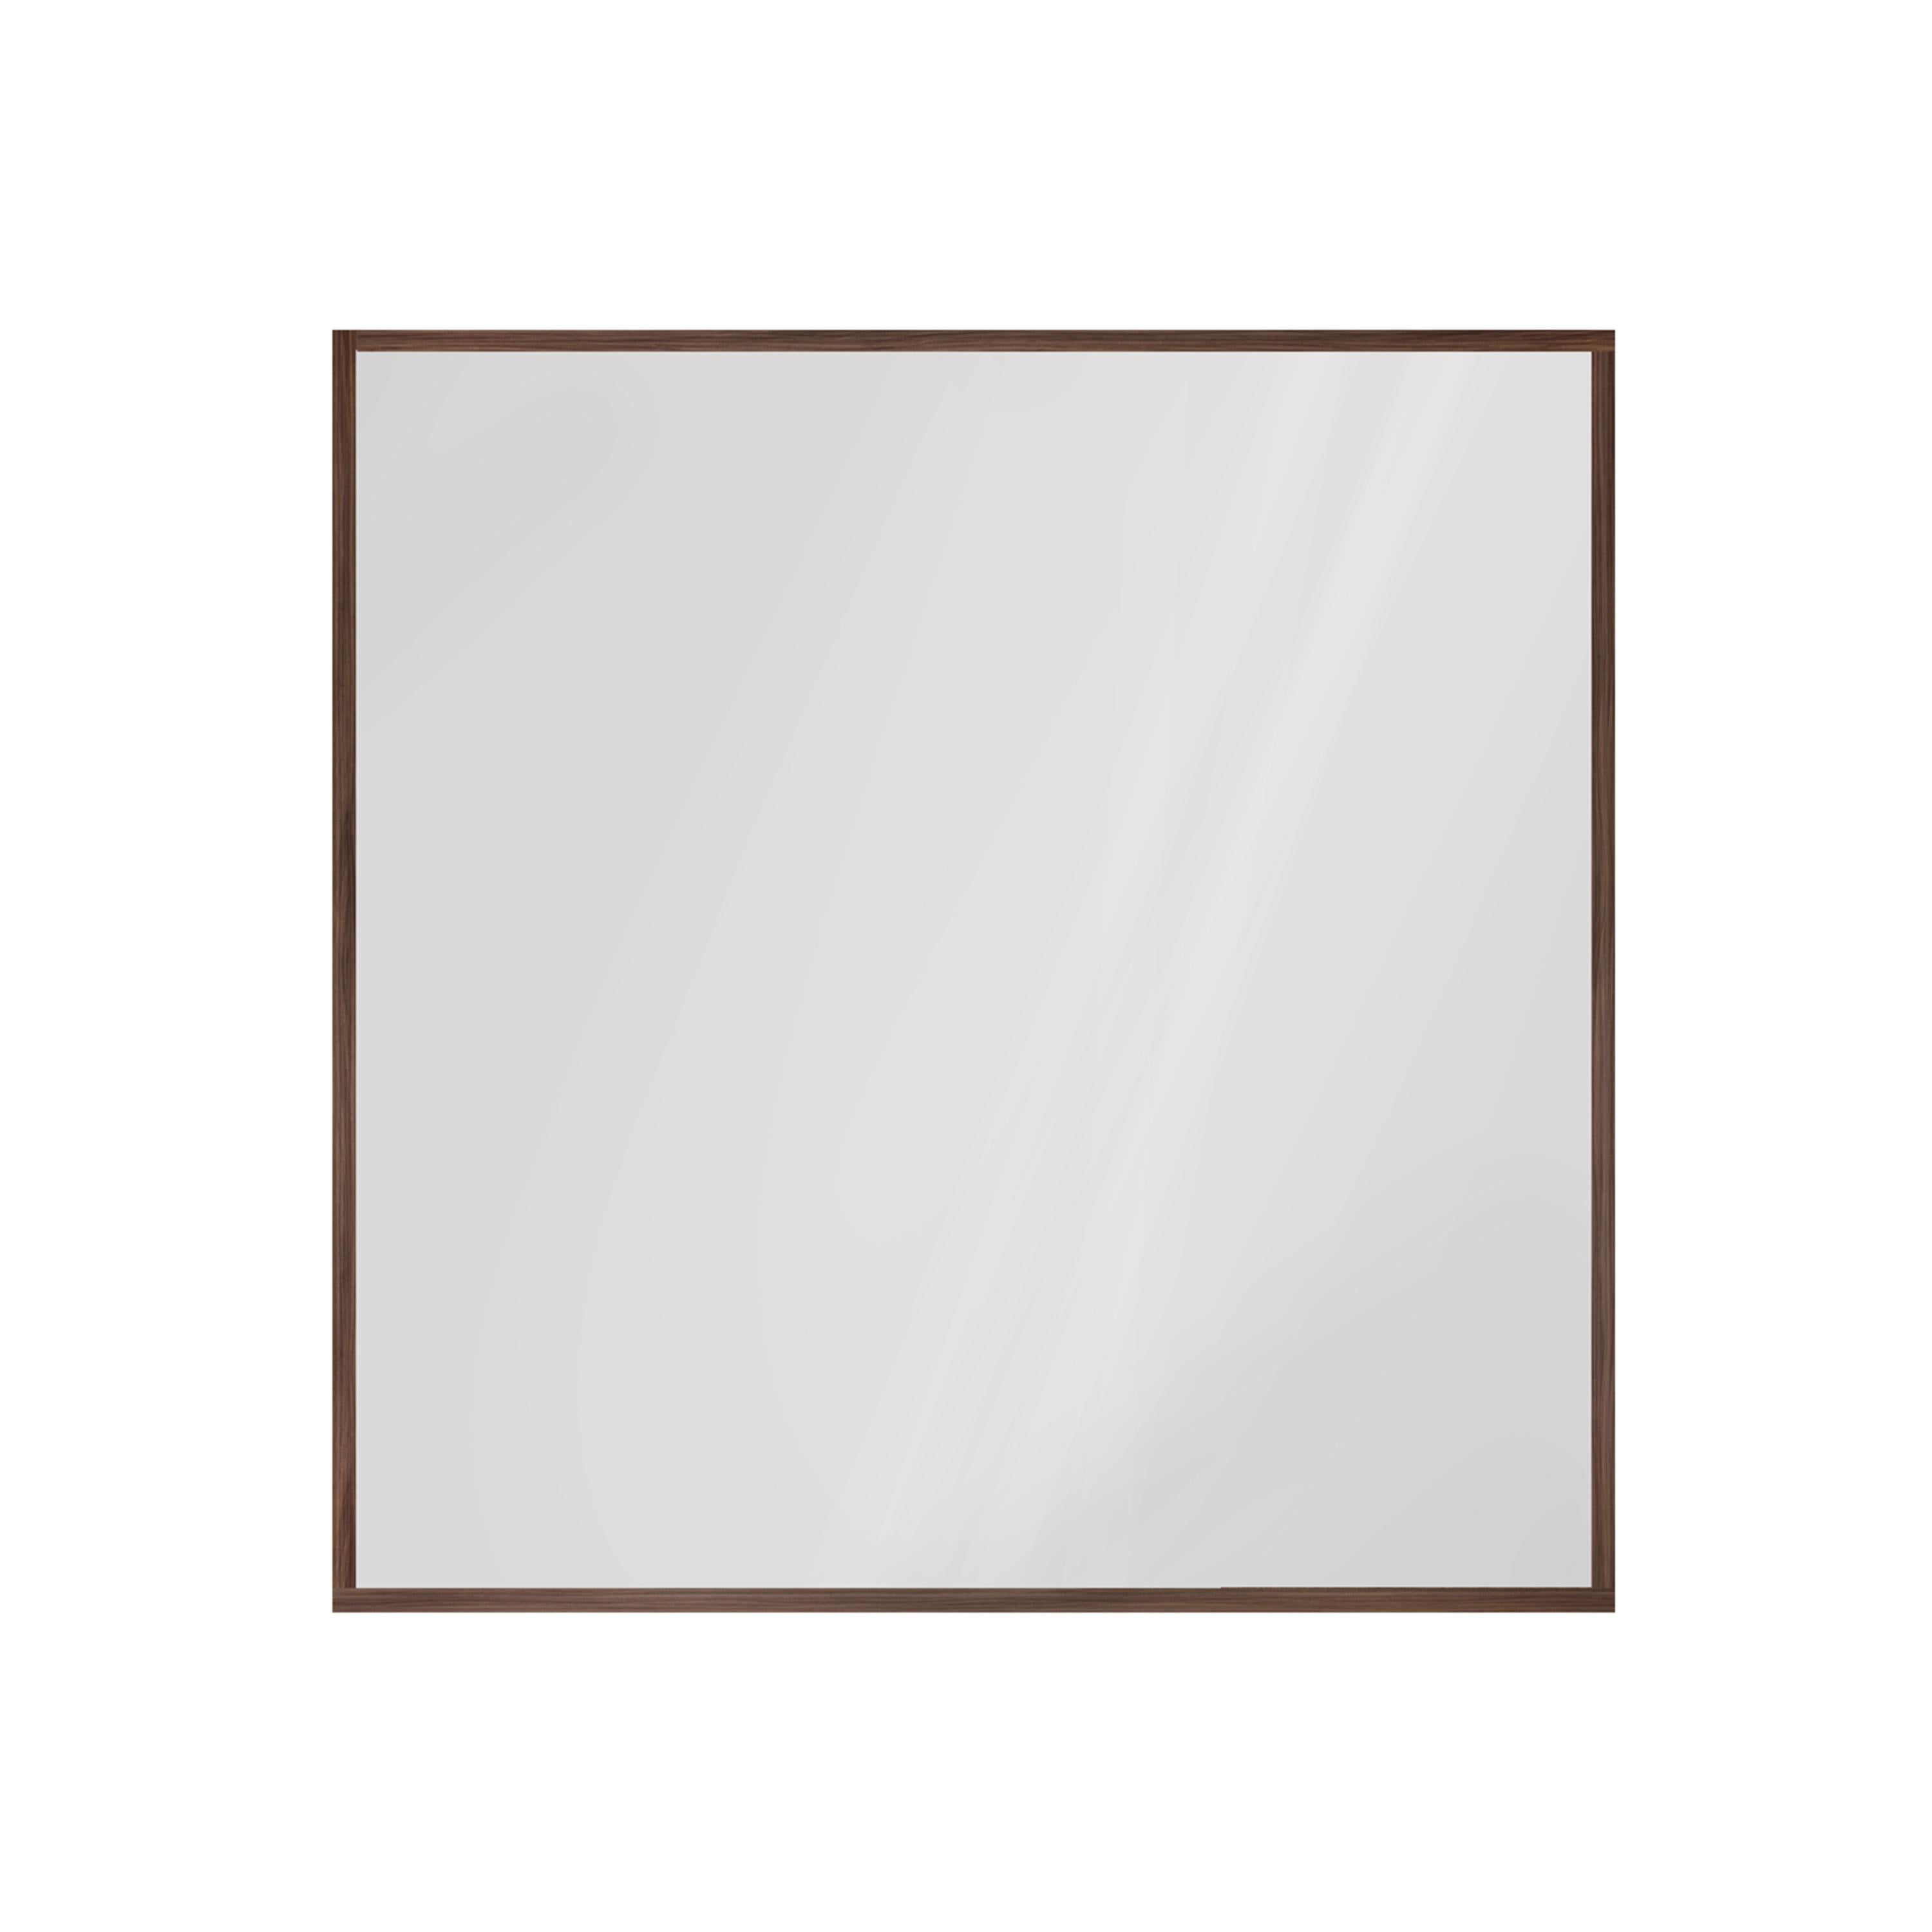 Miroir carré transparent avec cadre en bois de noyer.

Comme tous nos articles, ce miroir est fabriqué sur commande et est donc hautement personnalisable, y compris en termes de taille et de finition. Les frais de personnalisation ne s'élèvent qu'à